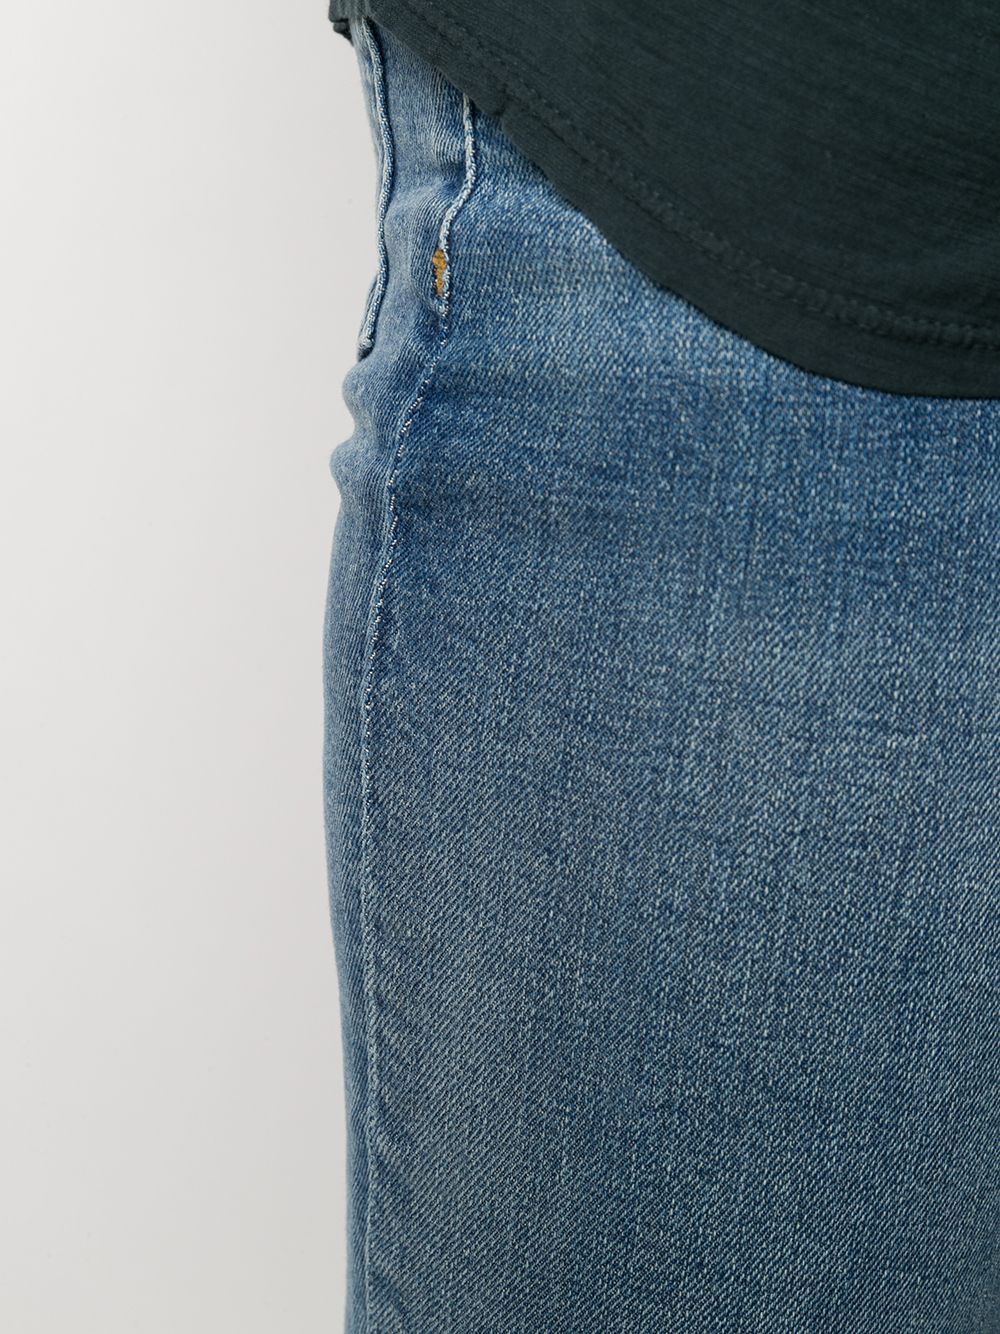 фото Re/done джинсы скинни